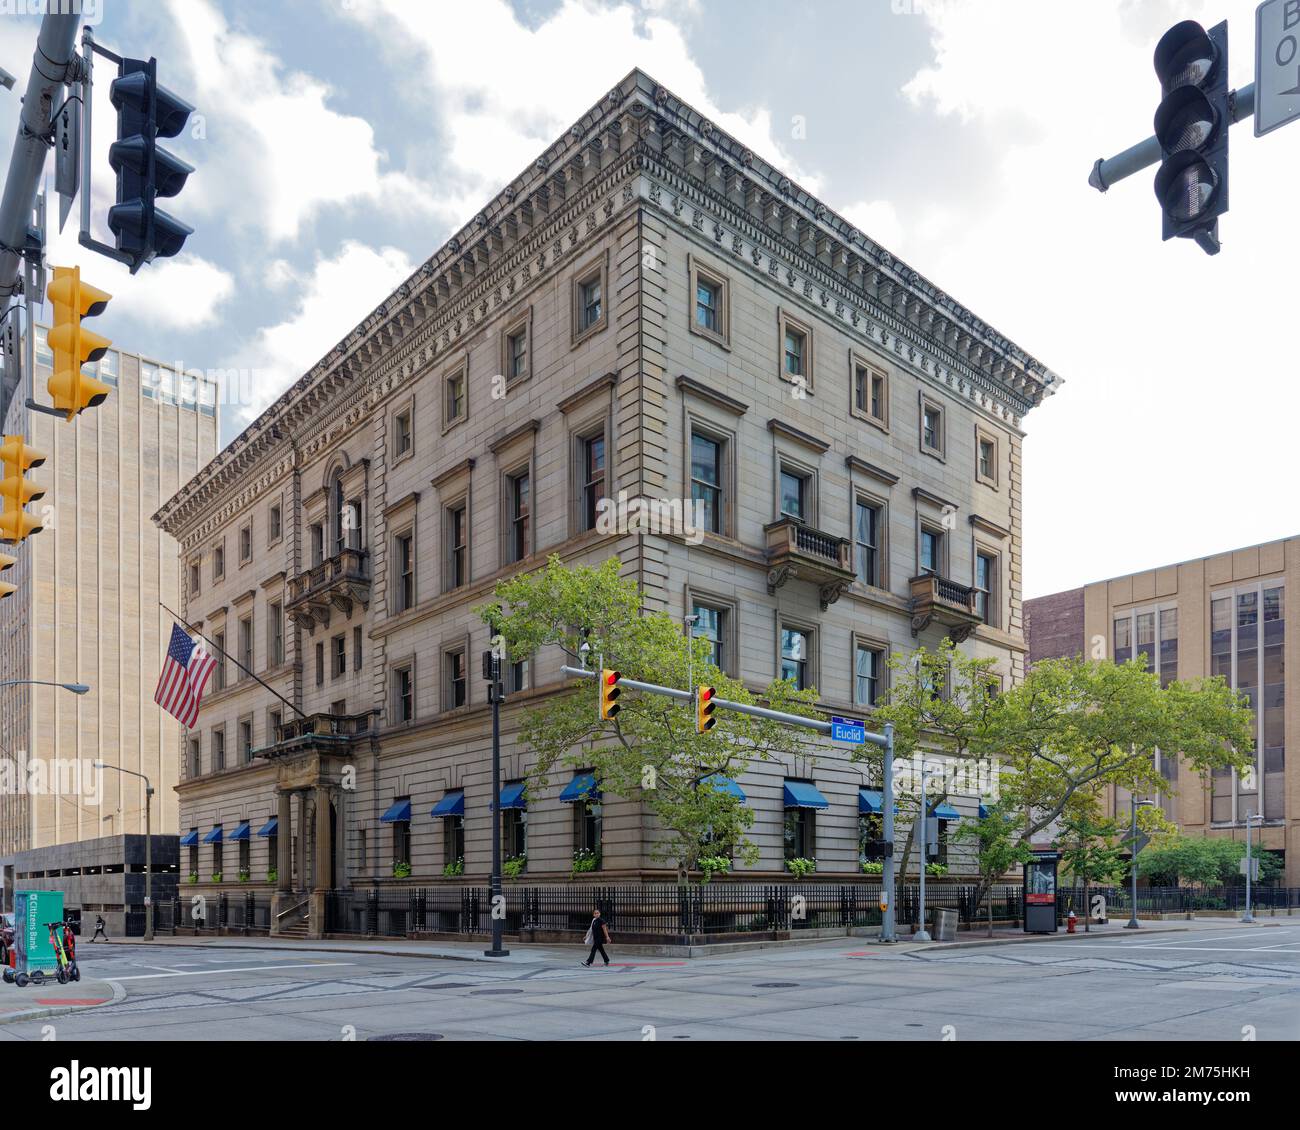 Der Union Club, ein Wahrzeichen im Renaissance-Stil, beherbergte Clevelands Elite – darunter fünf US-amerikanische Präsidenten: Grant, Hayes, Garfield, McKinley und Taft. Stockfoto